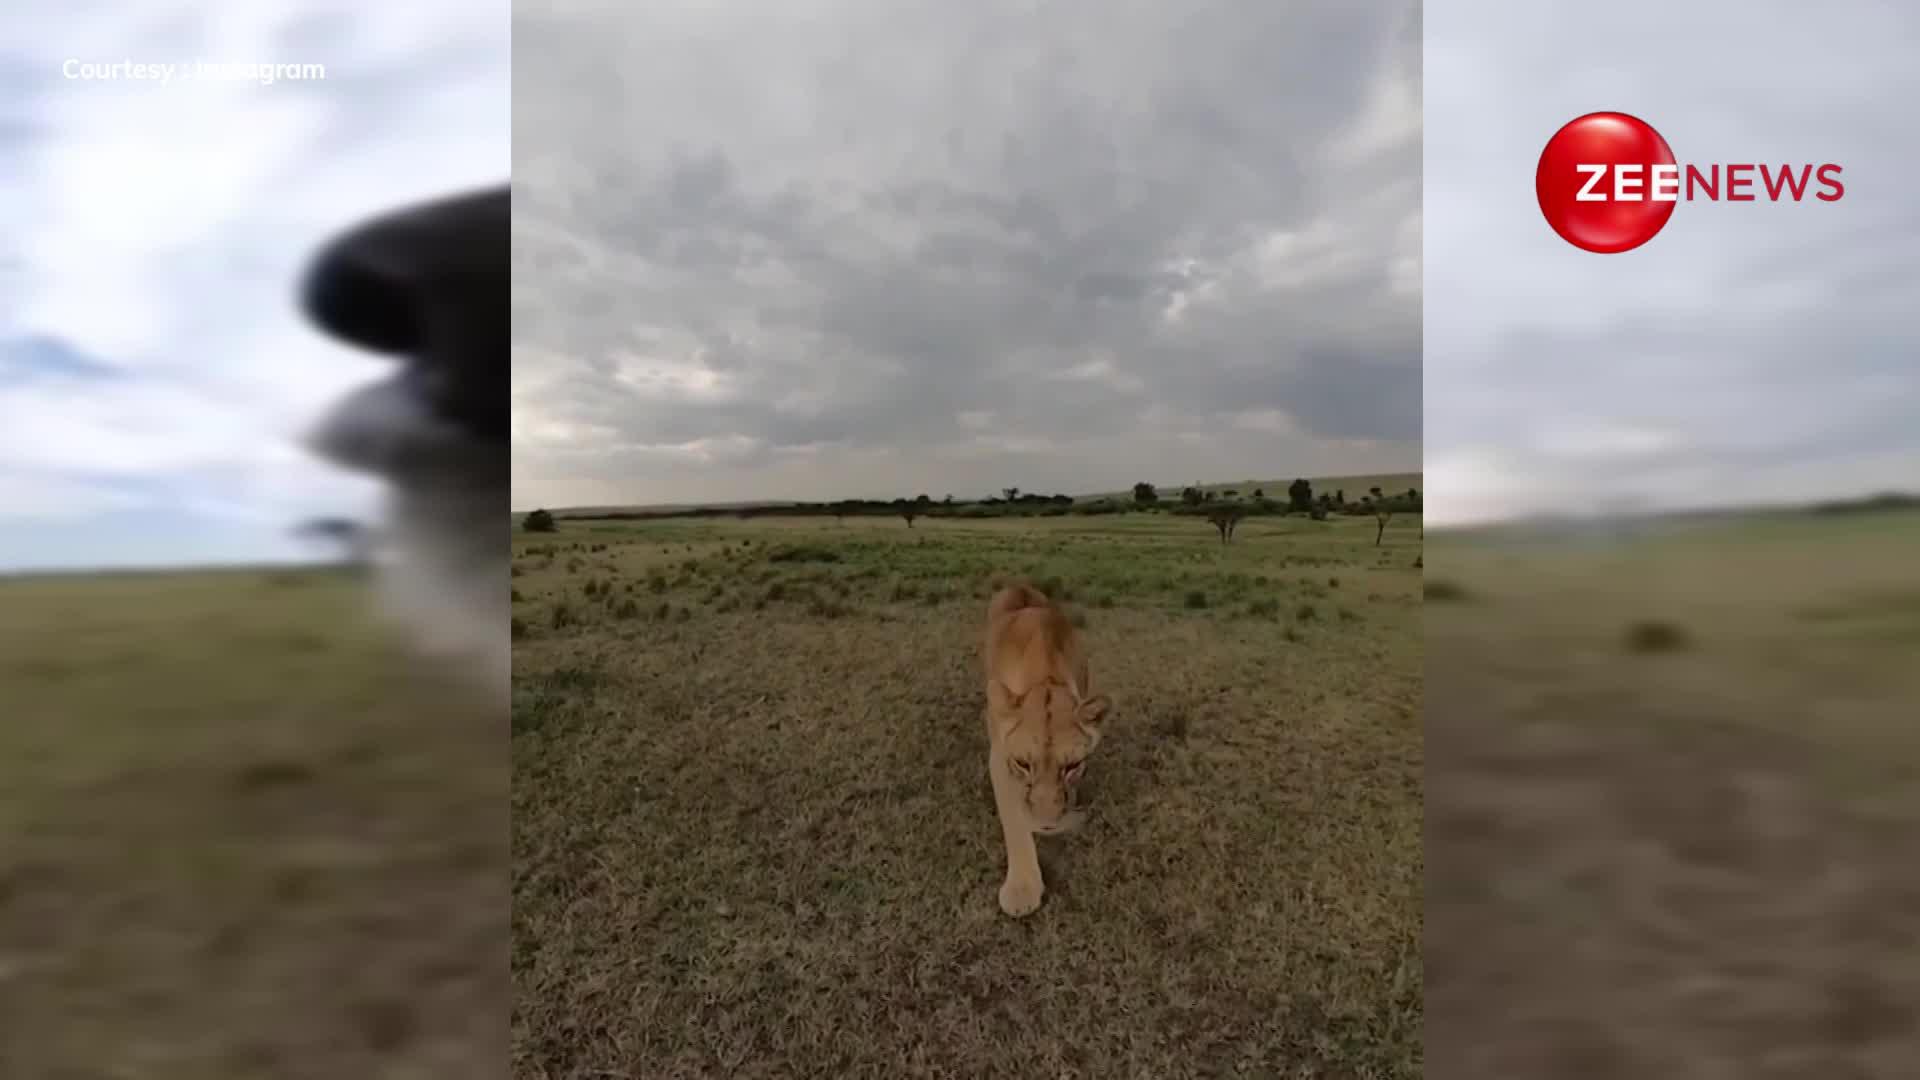 सेल्फी स्टिक पकड़कर व्लॉगिंग करने निकला शेर, जंगल का दिखाया अद्भुद नजारा; देखें ये वीडियो